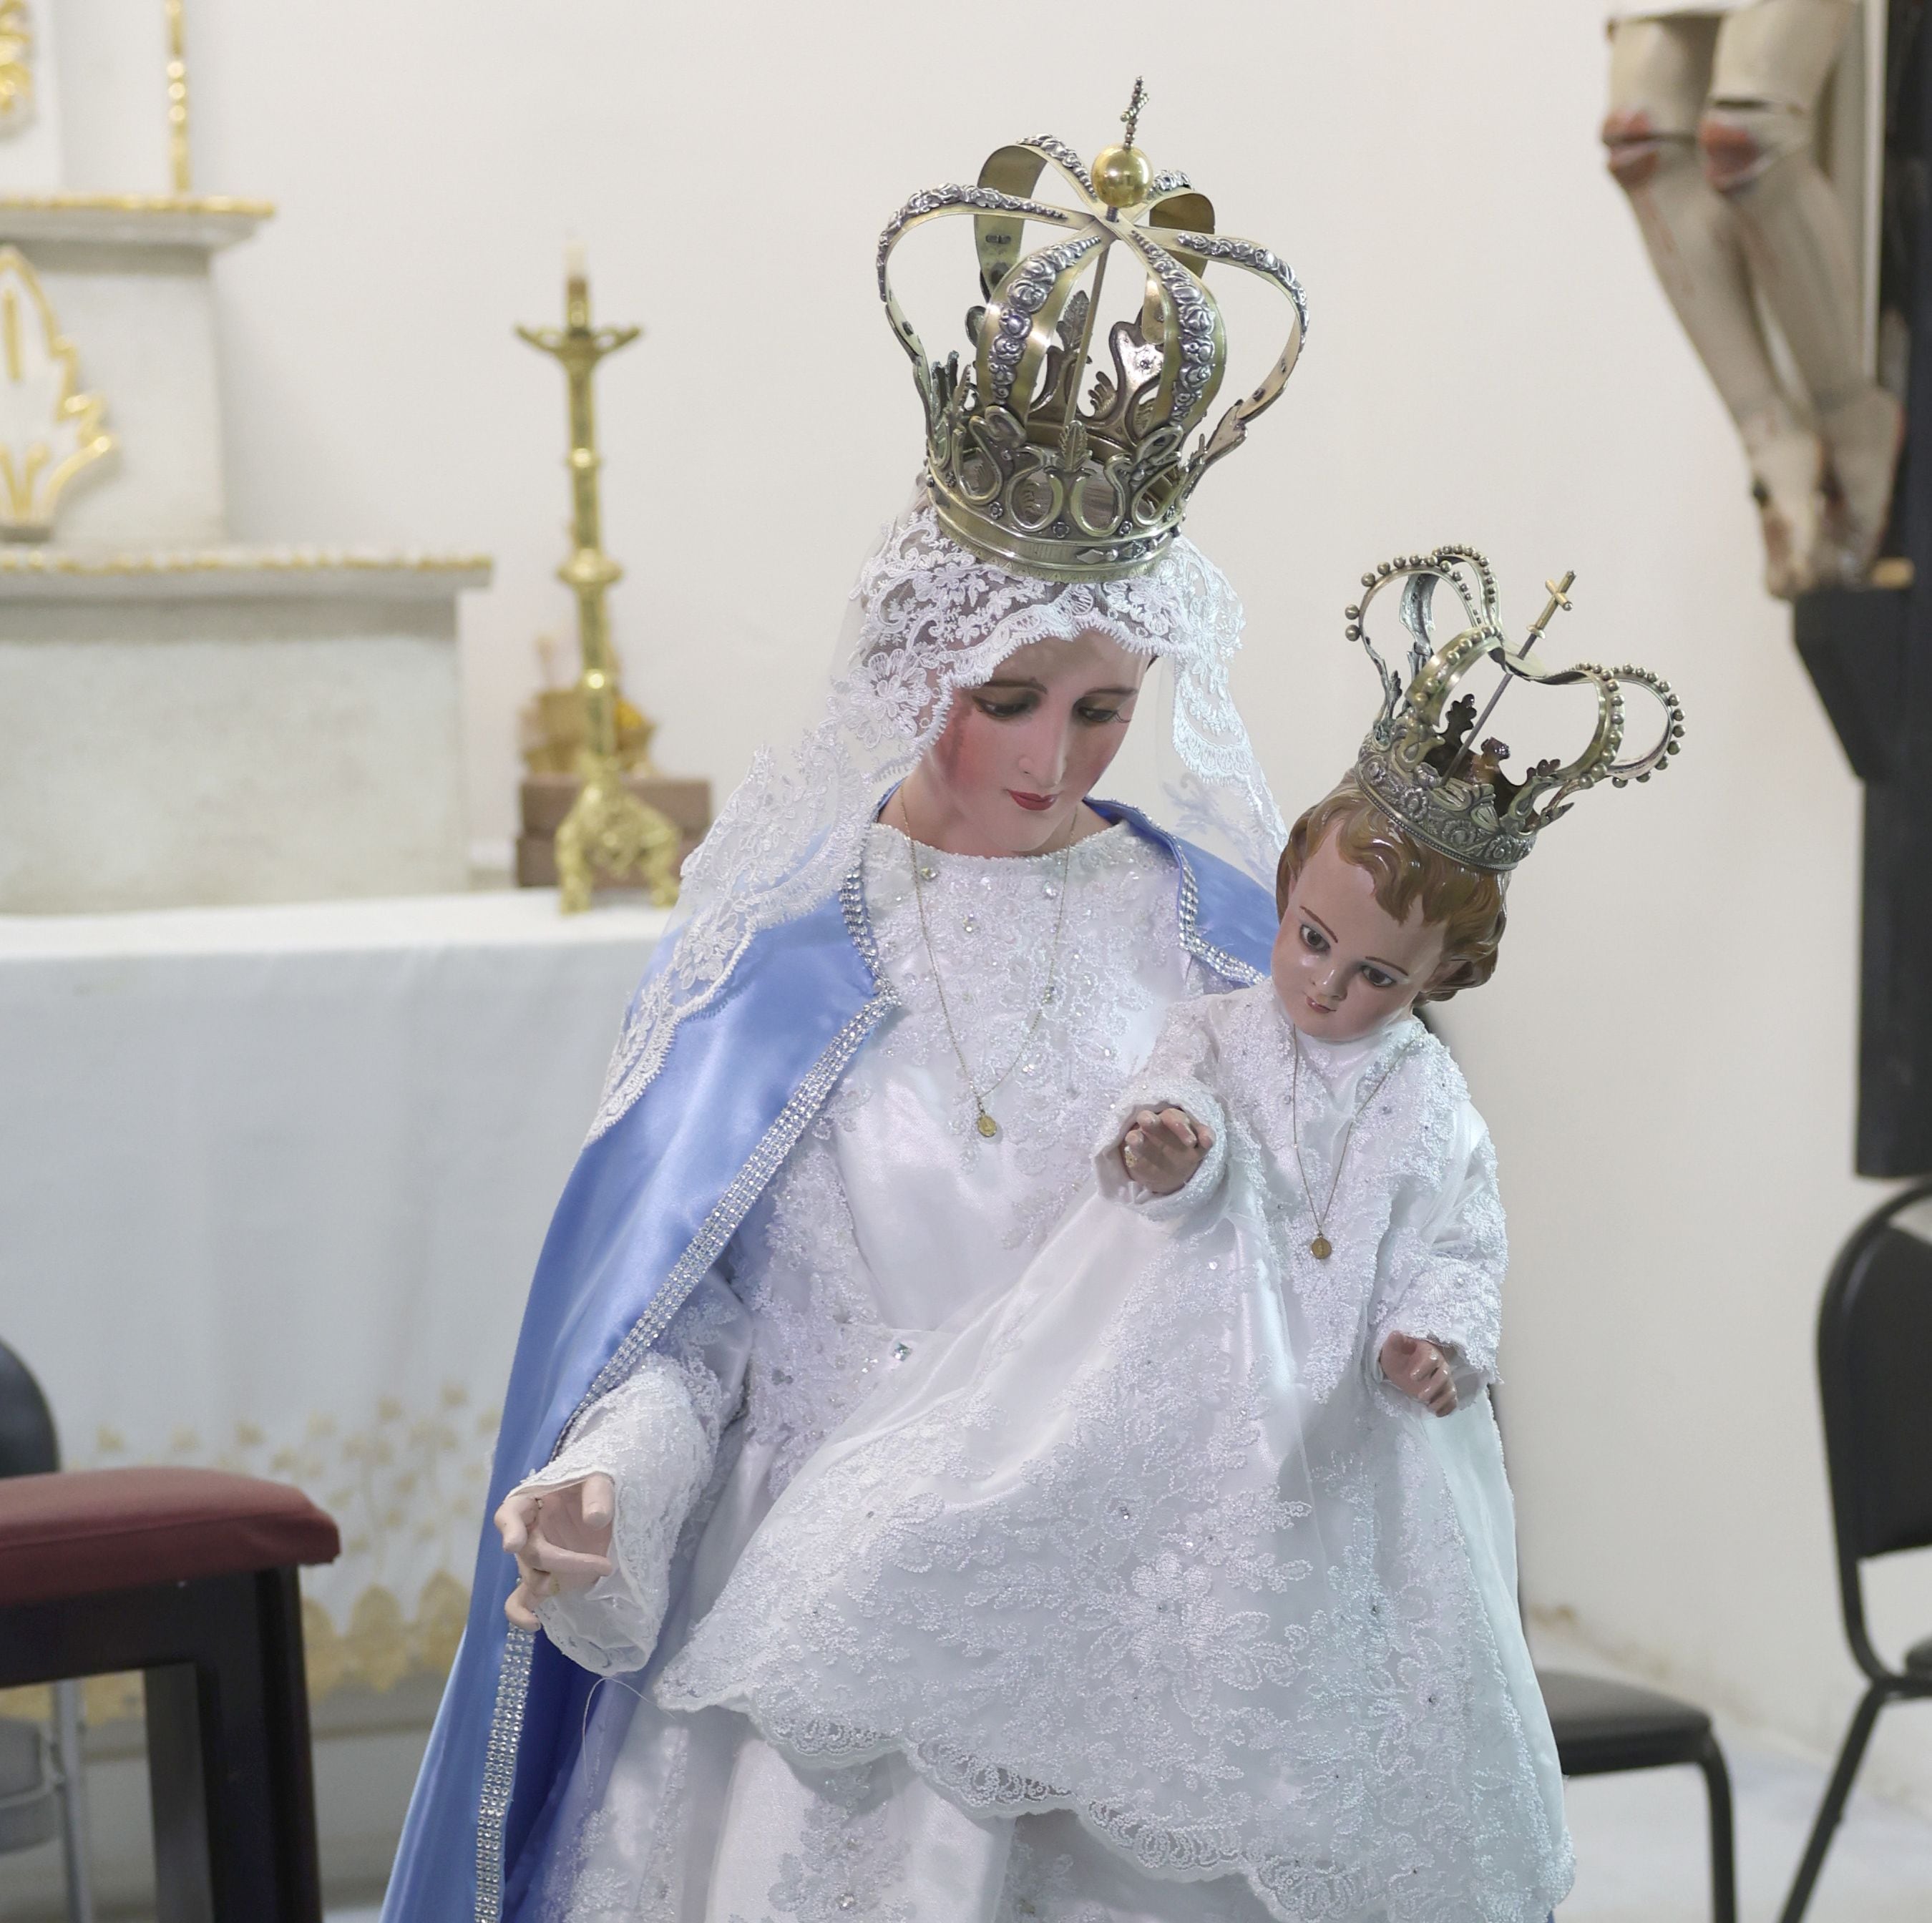 La víspera del Día de la Candelaria, los fieles designados cambian los vestidos a la Virgen en la iglesia en Villa de Seris, encargo considerado un gran honor. FOTO: TEODORO BORBÓN